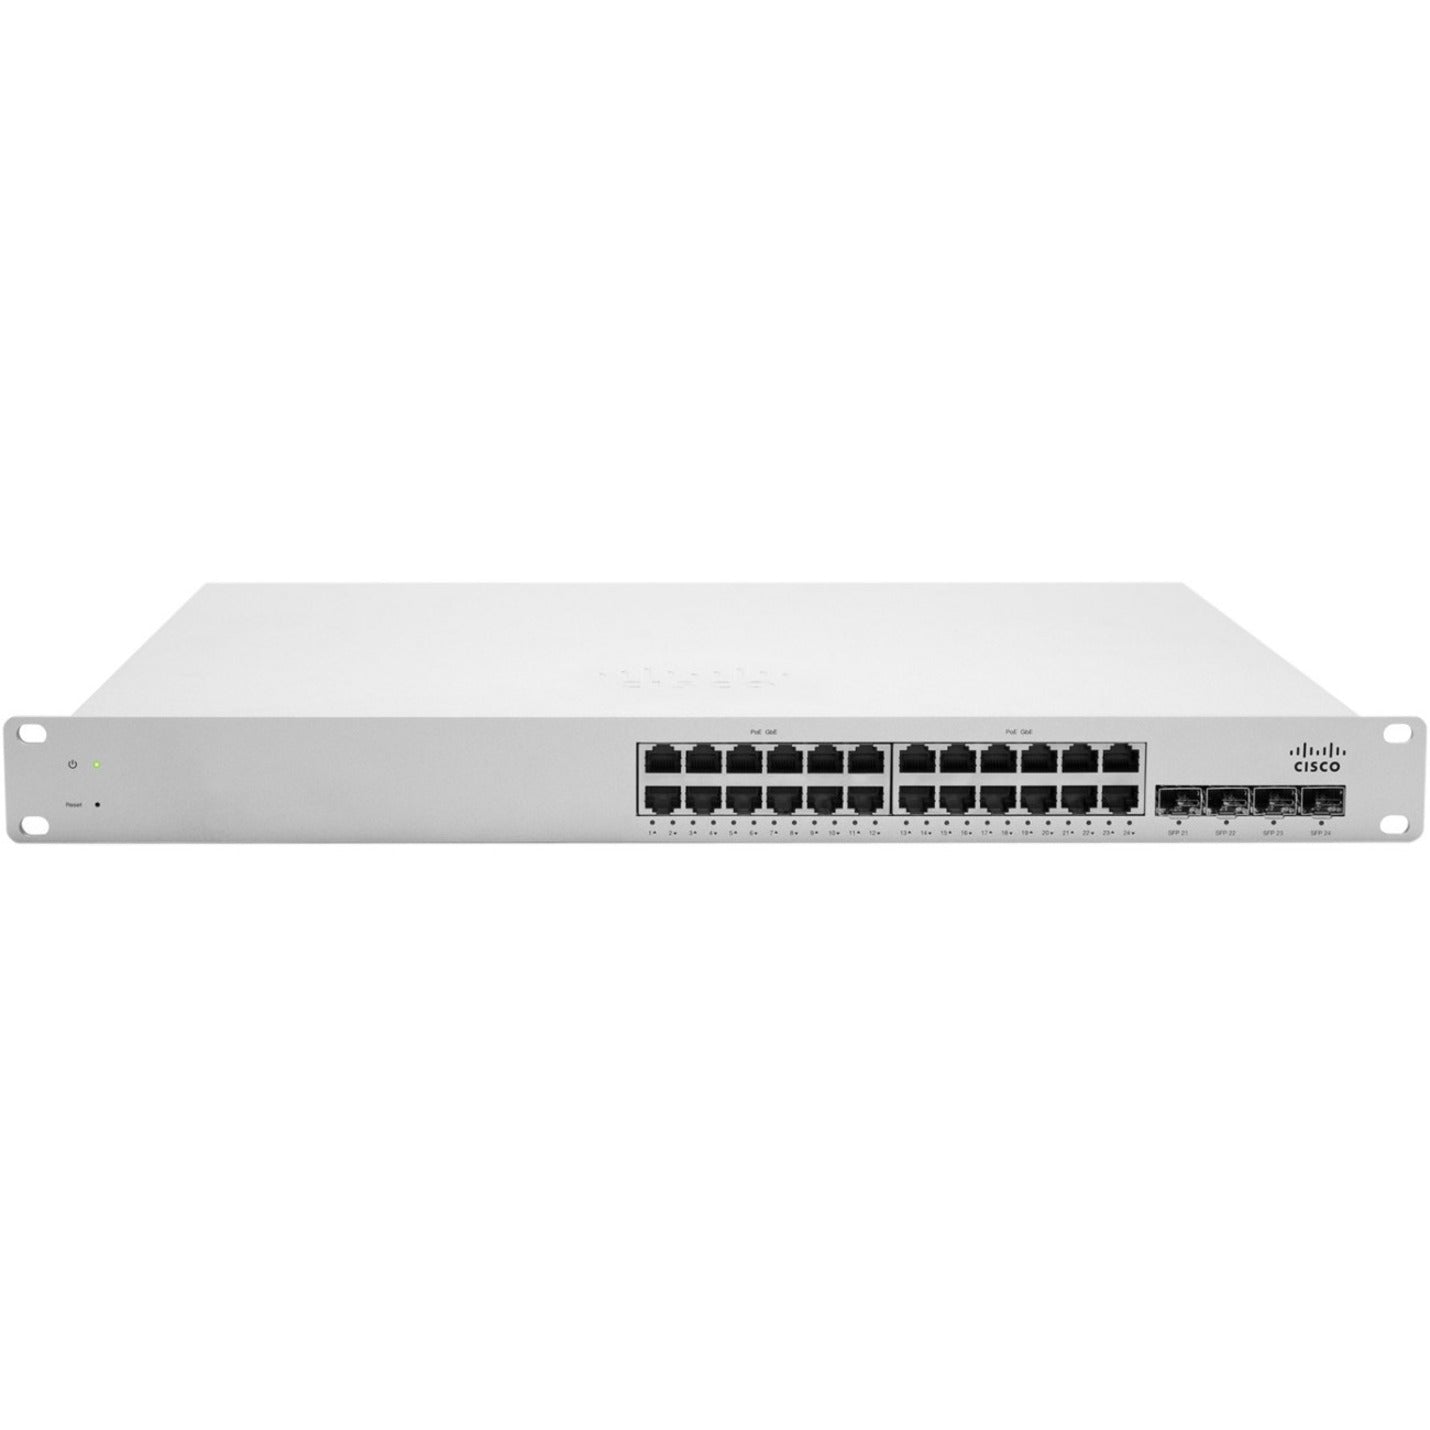 Meraki MS220-24P L2 Cloud Managed 24 Port GigE 370W PoE Switch (MS220-24P-HW)